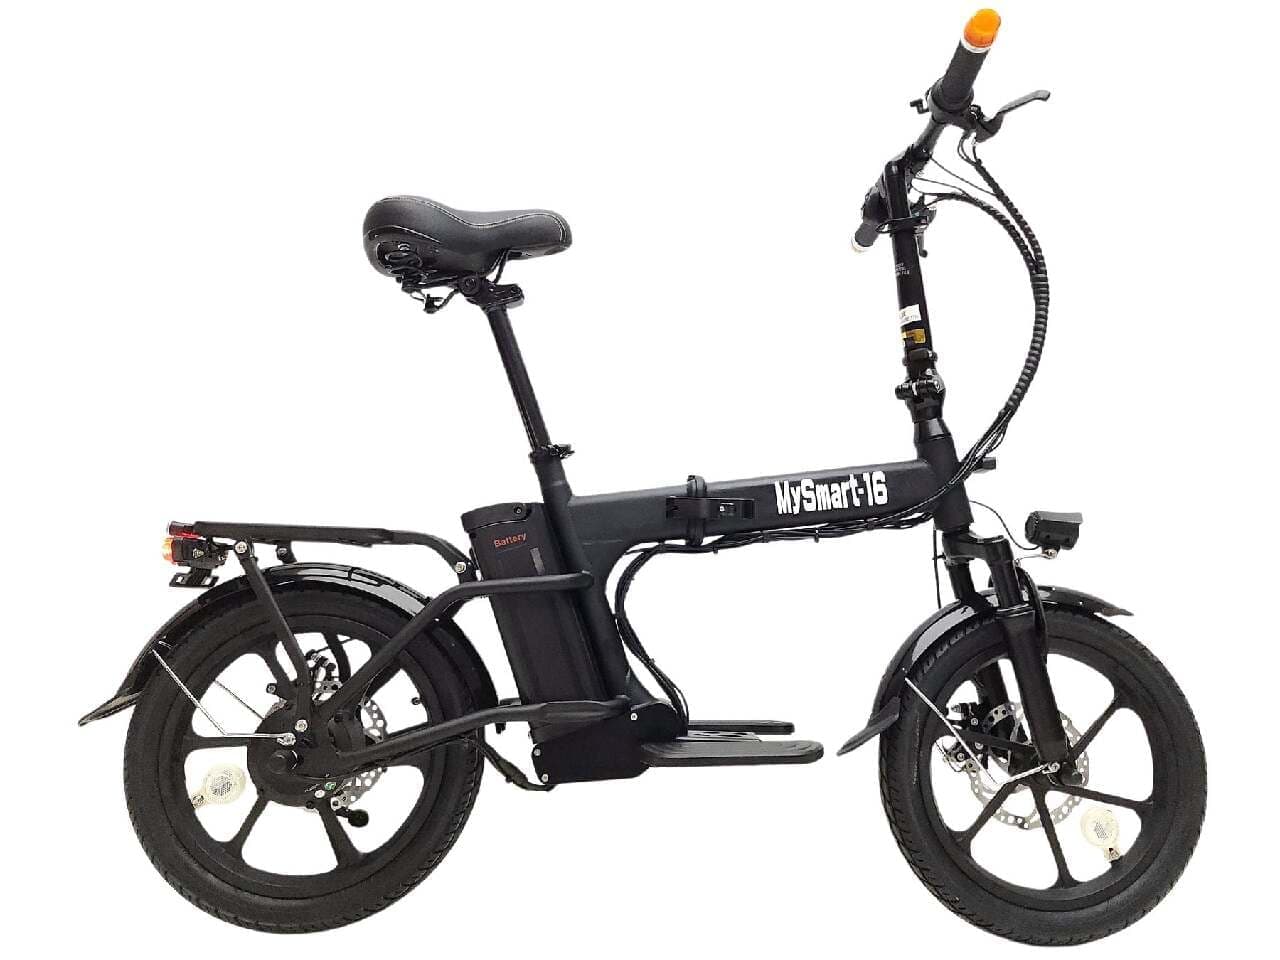 上山商会より、都市移動を効率化するフル電動折り畳み自転車「MySmart16」発売、全国の店舗で取り扱い募集開始 画像1